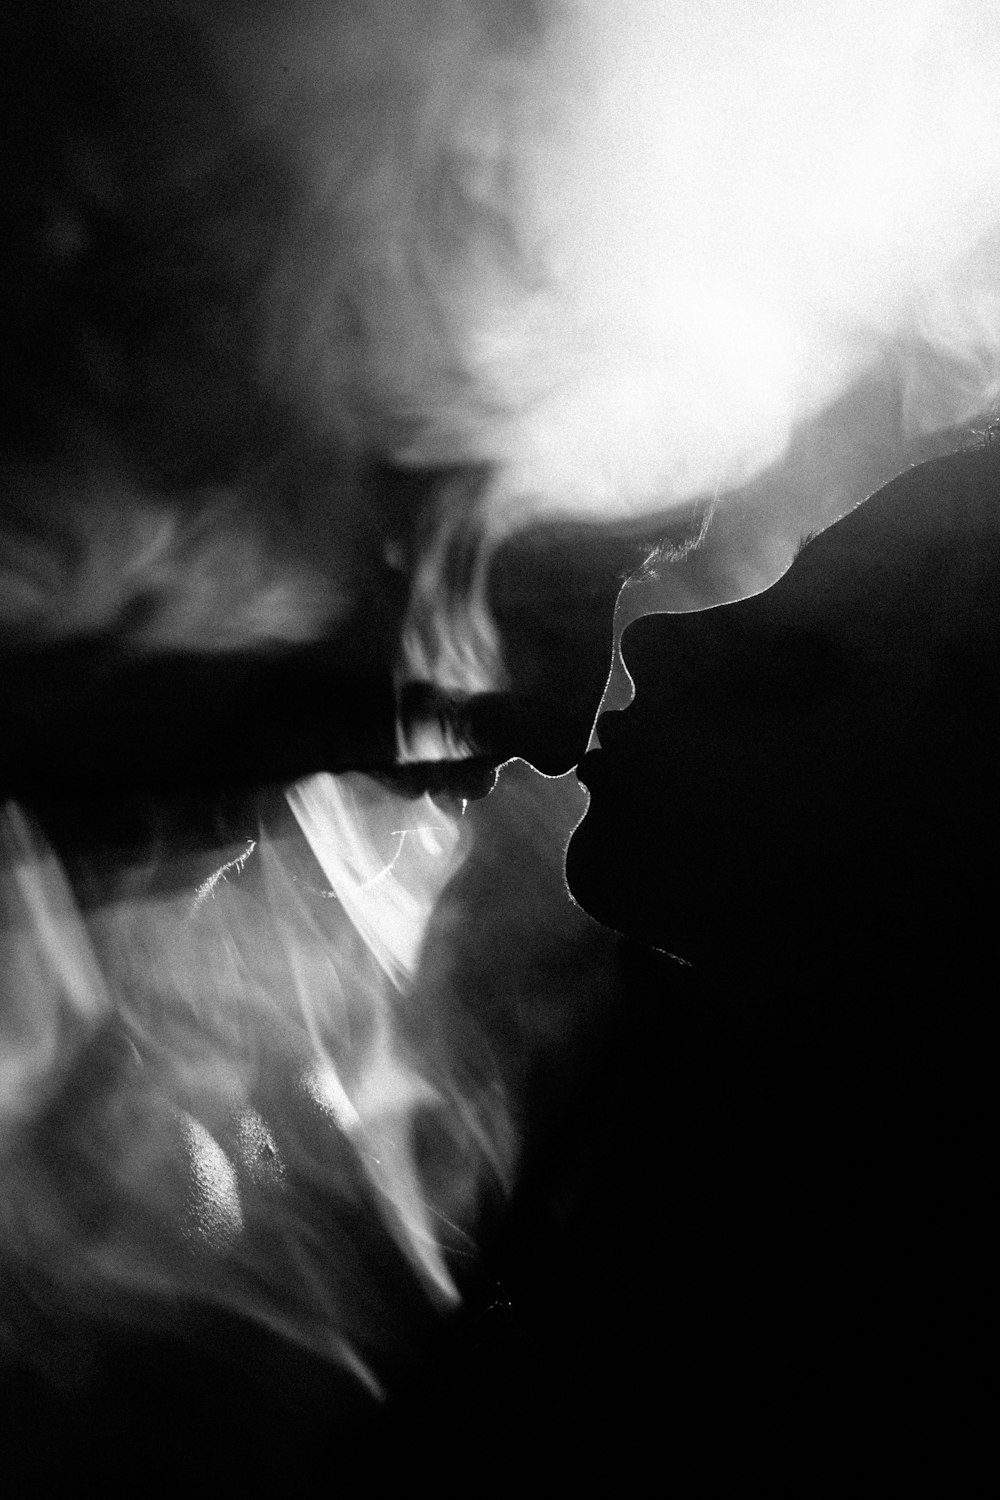 Una foto en blanco y negro de una persona fumando un cigarrillo